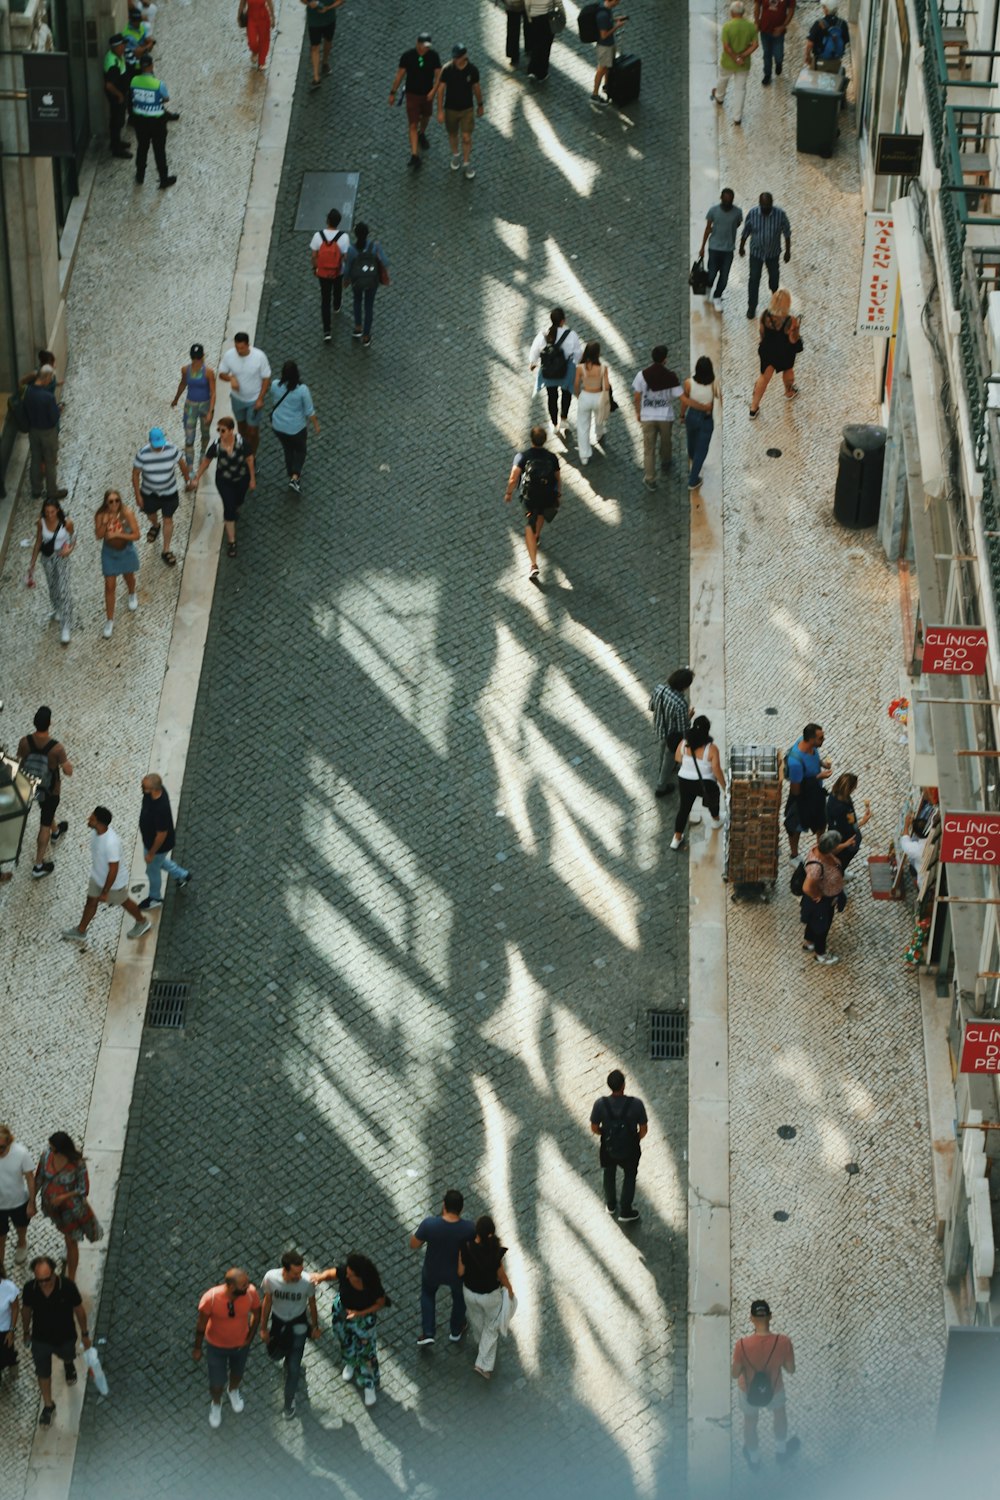 Un grupo de personas caminando por una calle